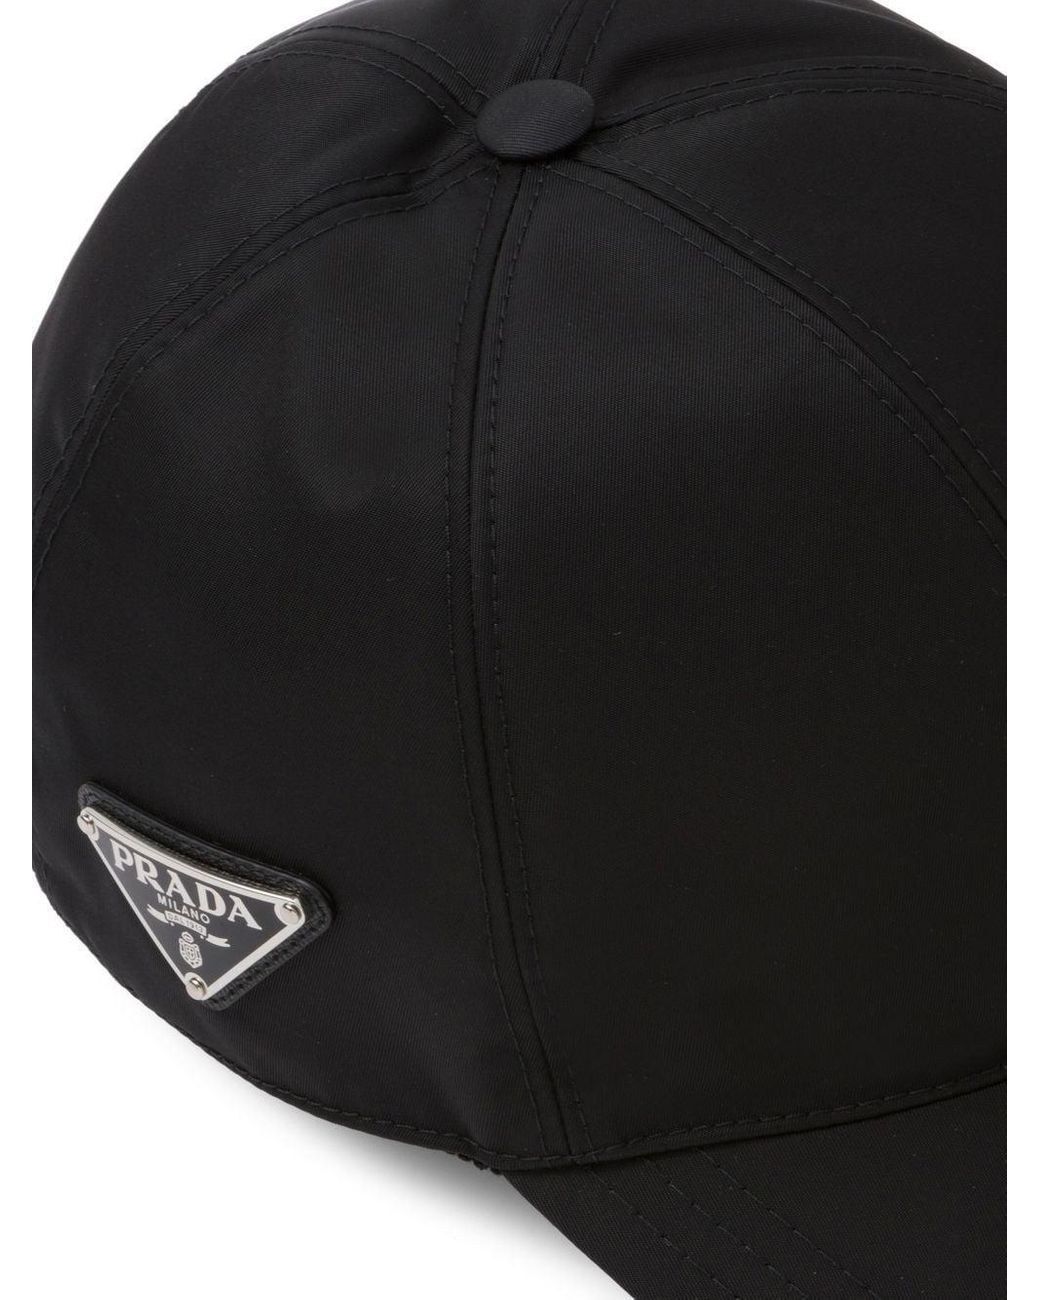 Prada Re-nylon Baseball Cap in Black for Men | Lyst UK